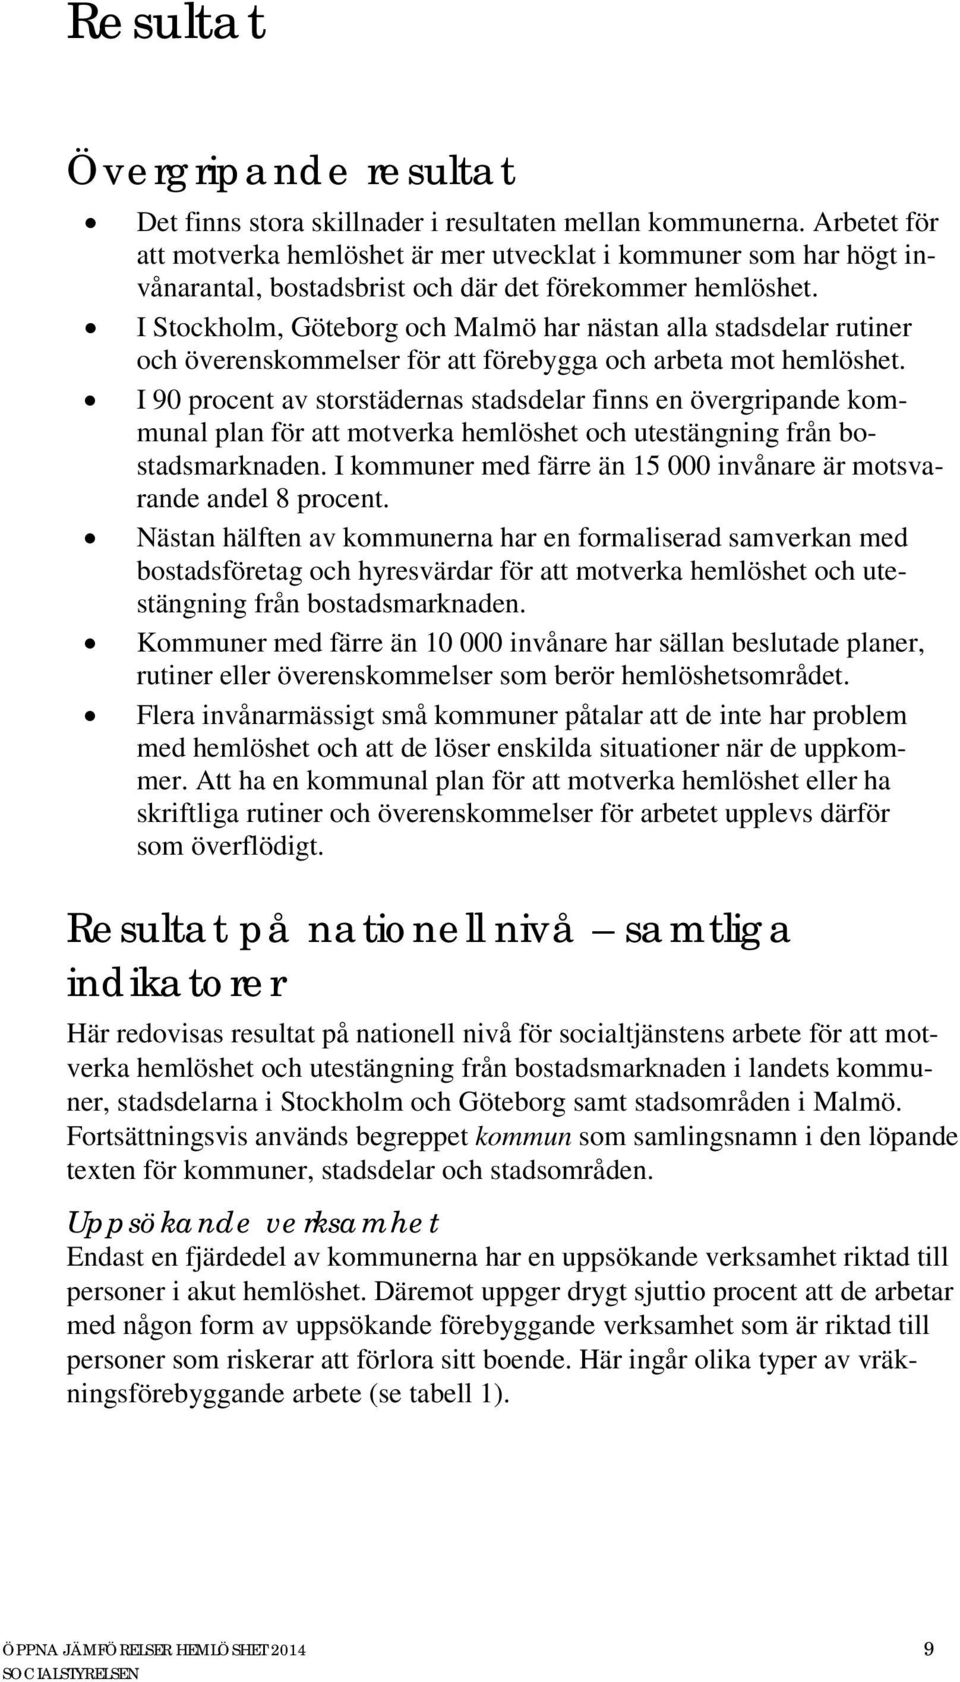 I Stockholm, Göteborg och Malmö har nästan alla stadsdelar rutiner och överenskommelser för att förebygga och arbeta mot hemlöshet.